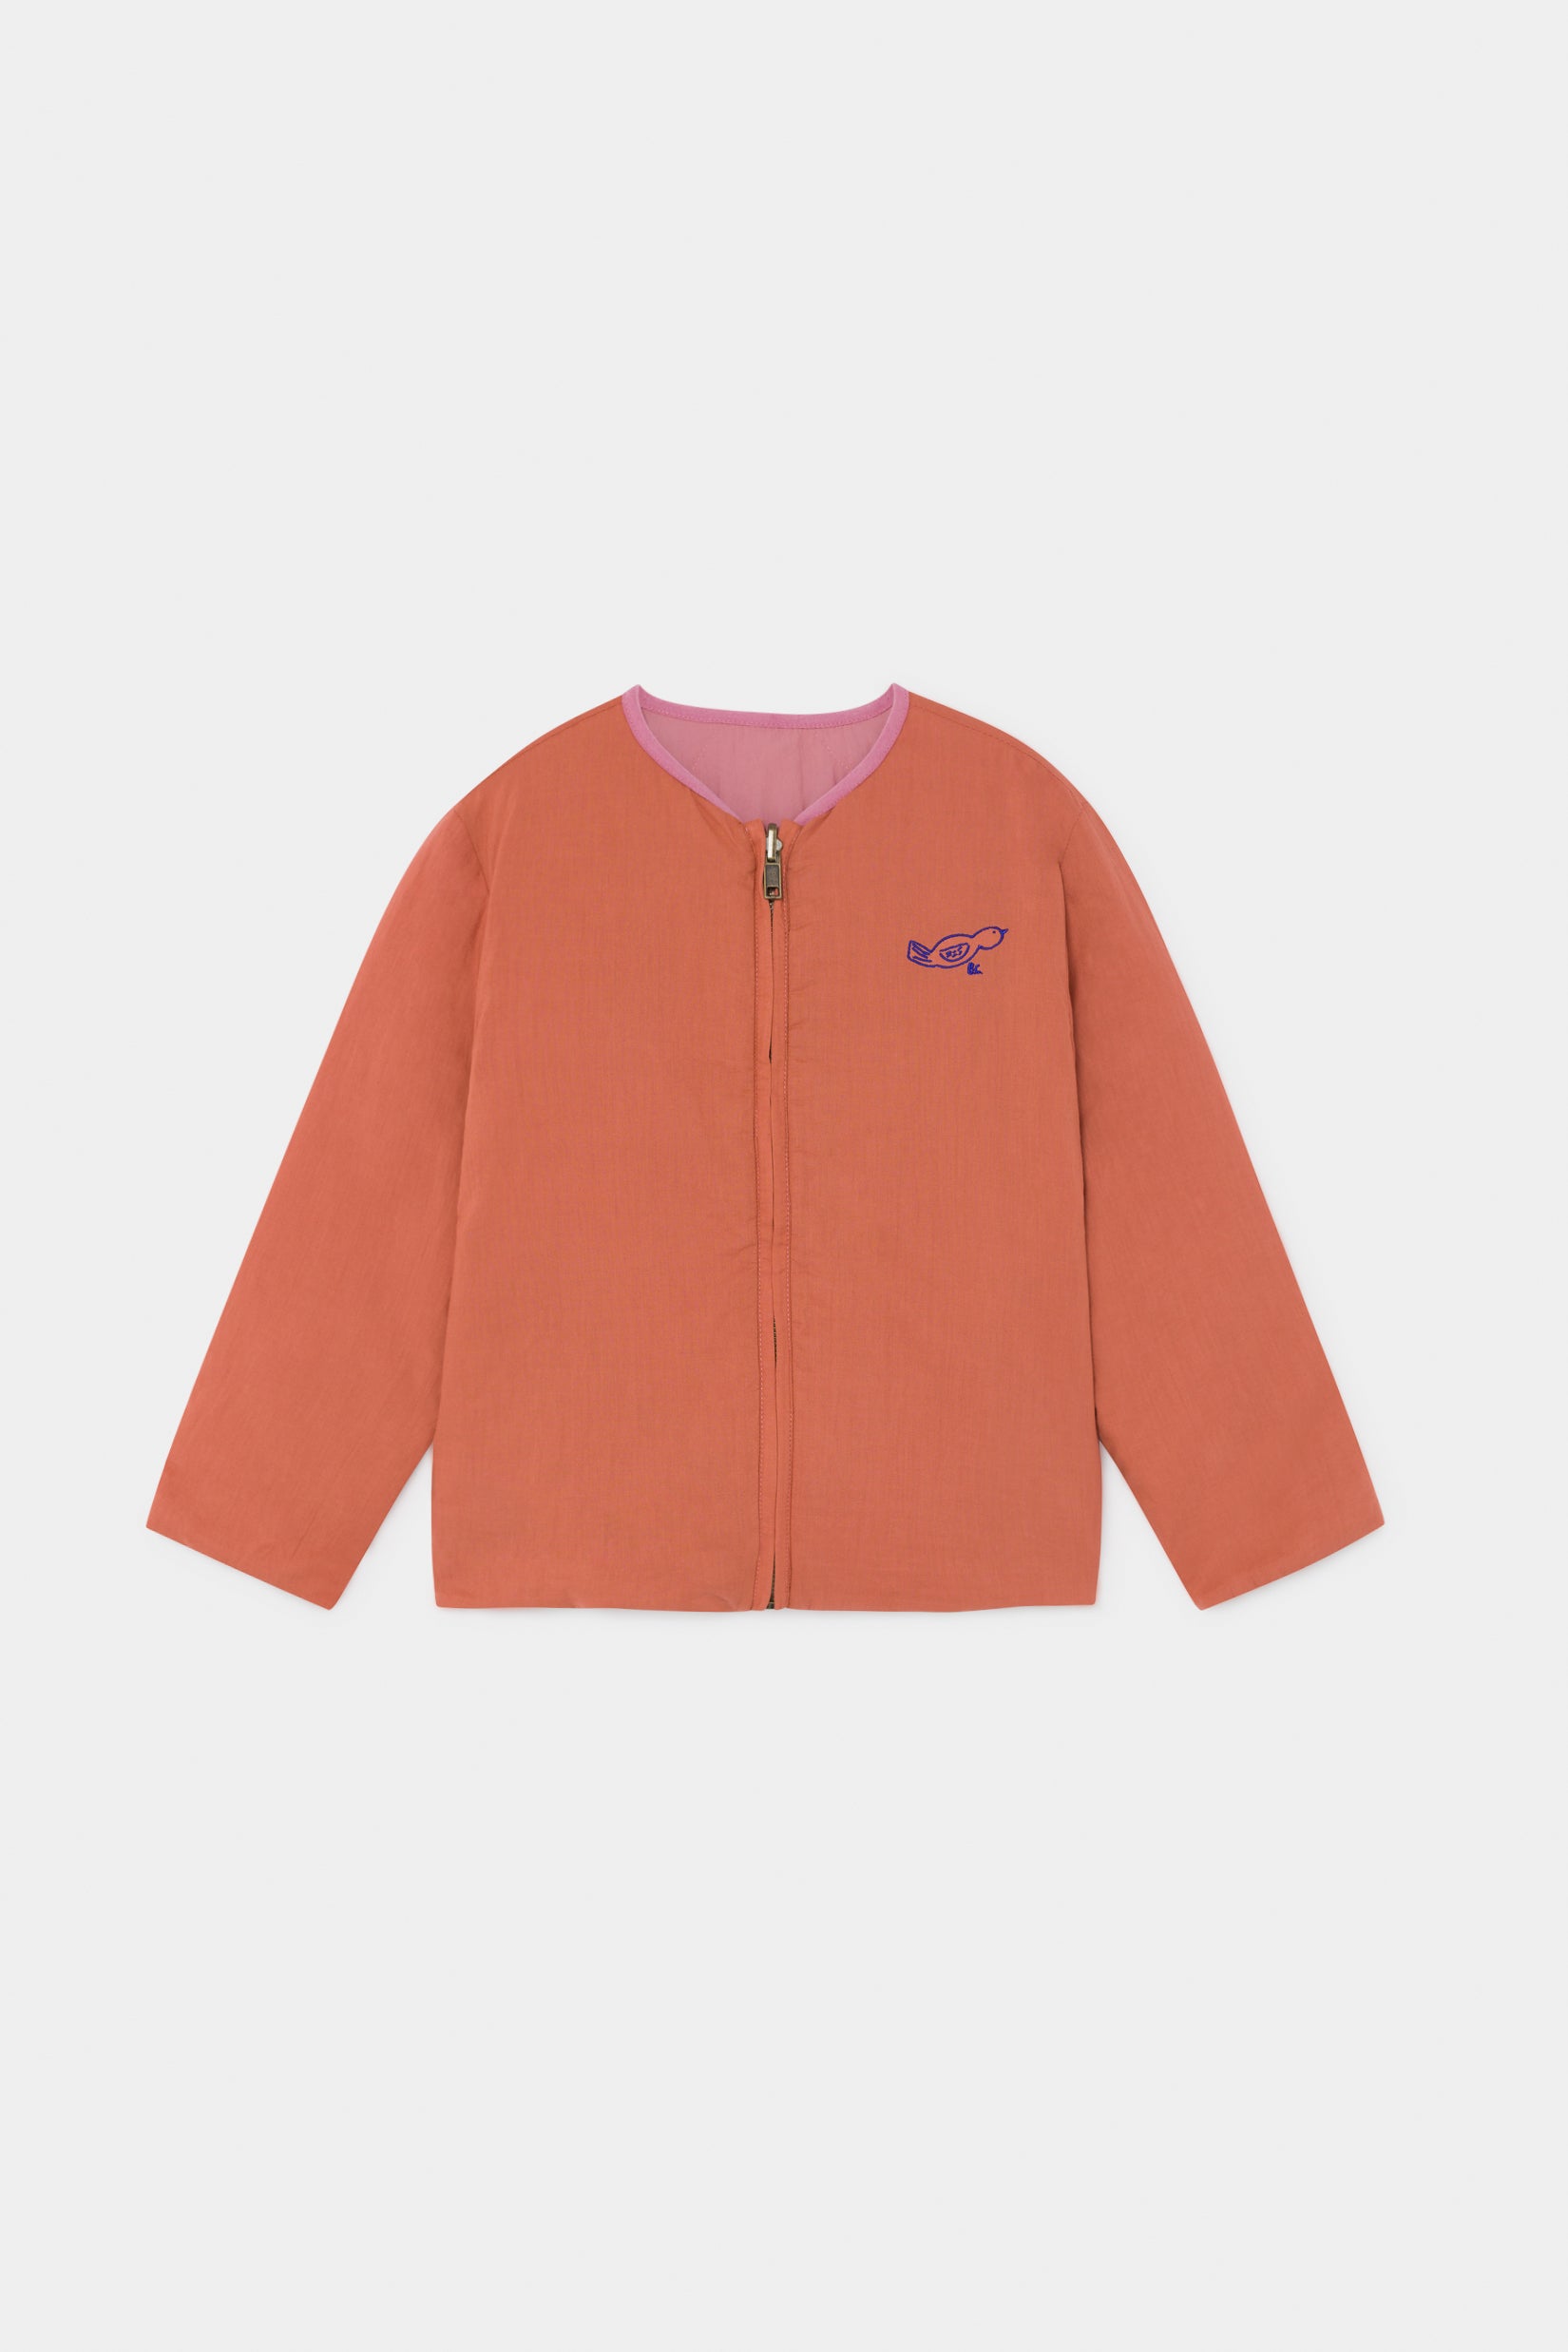 Boys Pink & Orange Reversible Jacket